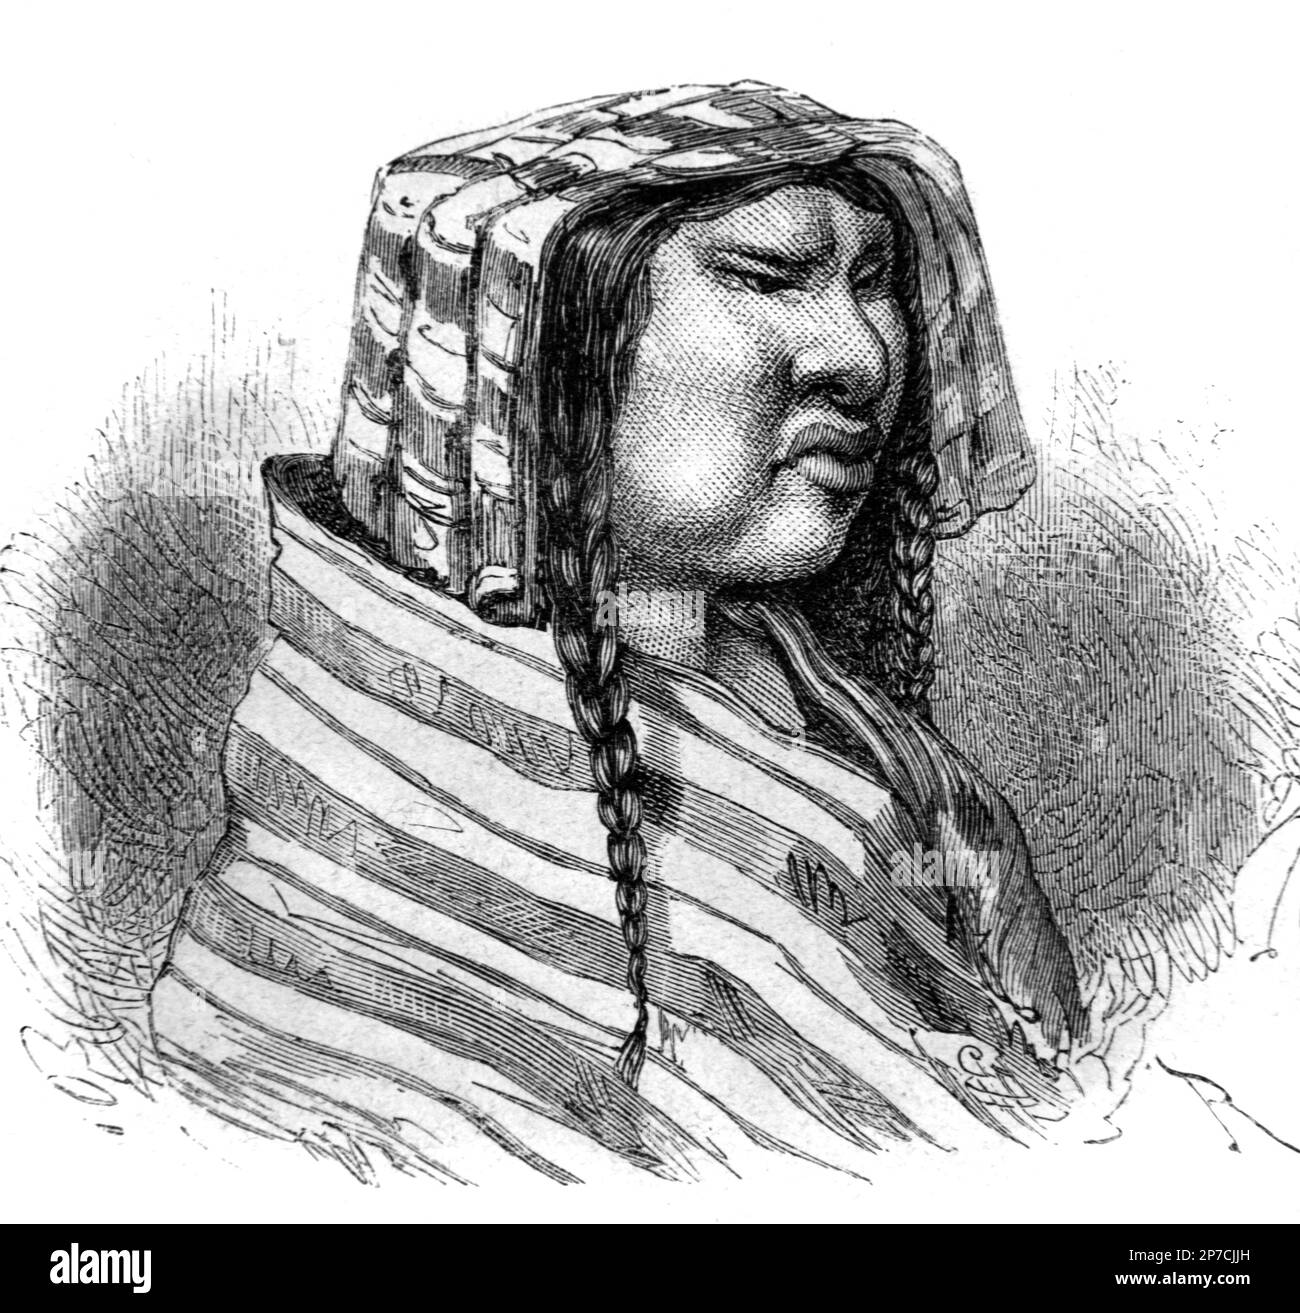 Portrait d’une femme quechua, peuple indigène d’Amérique du Sud, en particulier du Pérou et de Bolivie, vêtue de vêtements traditionnels dont un poncho. Gravure vintage ou illustration 1862 Banque D'Images